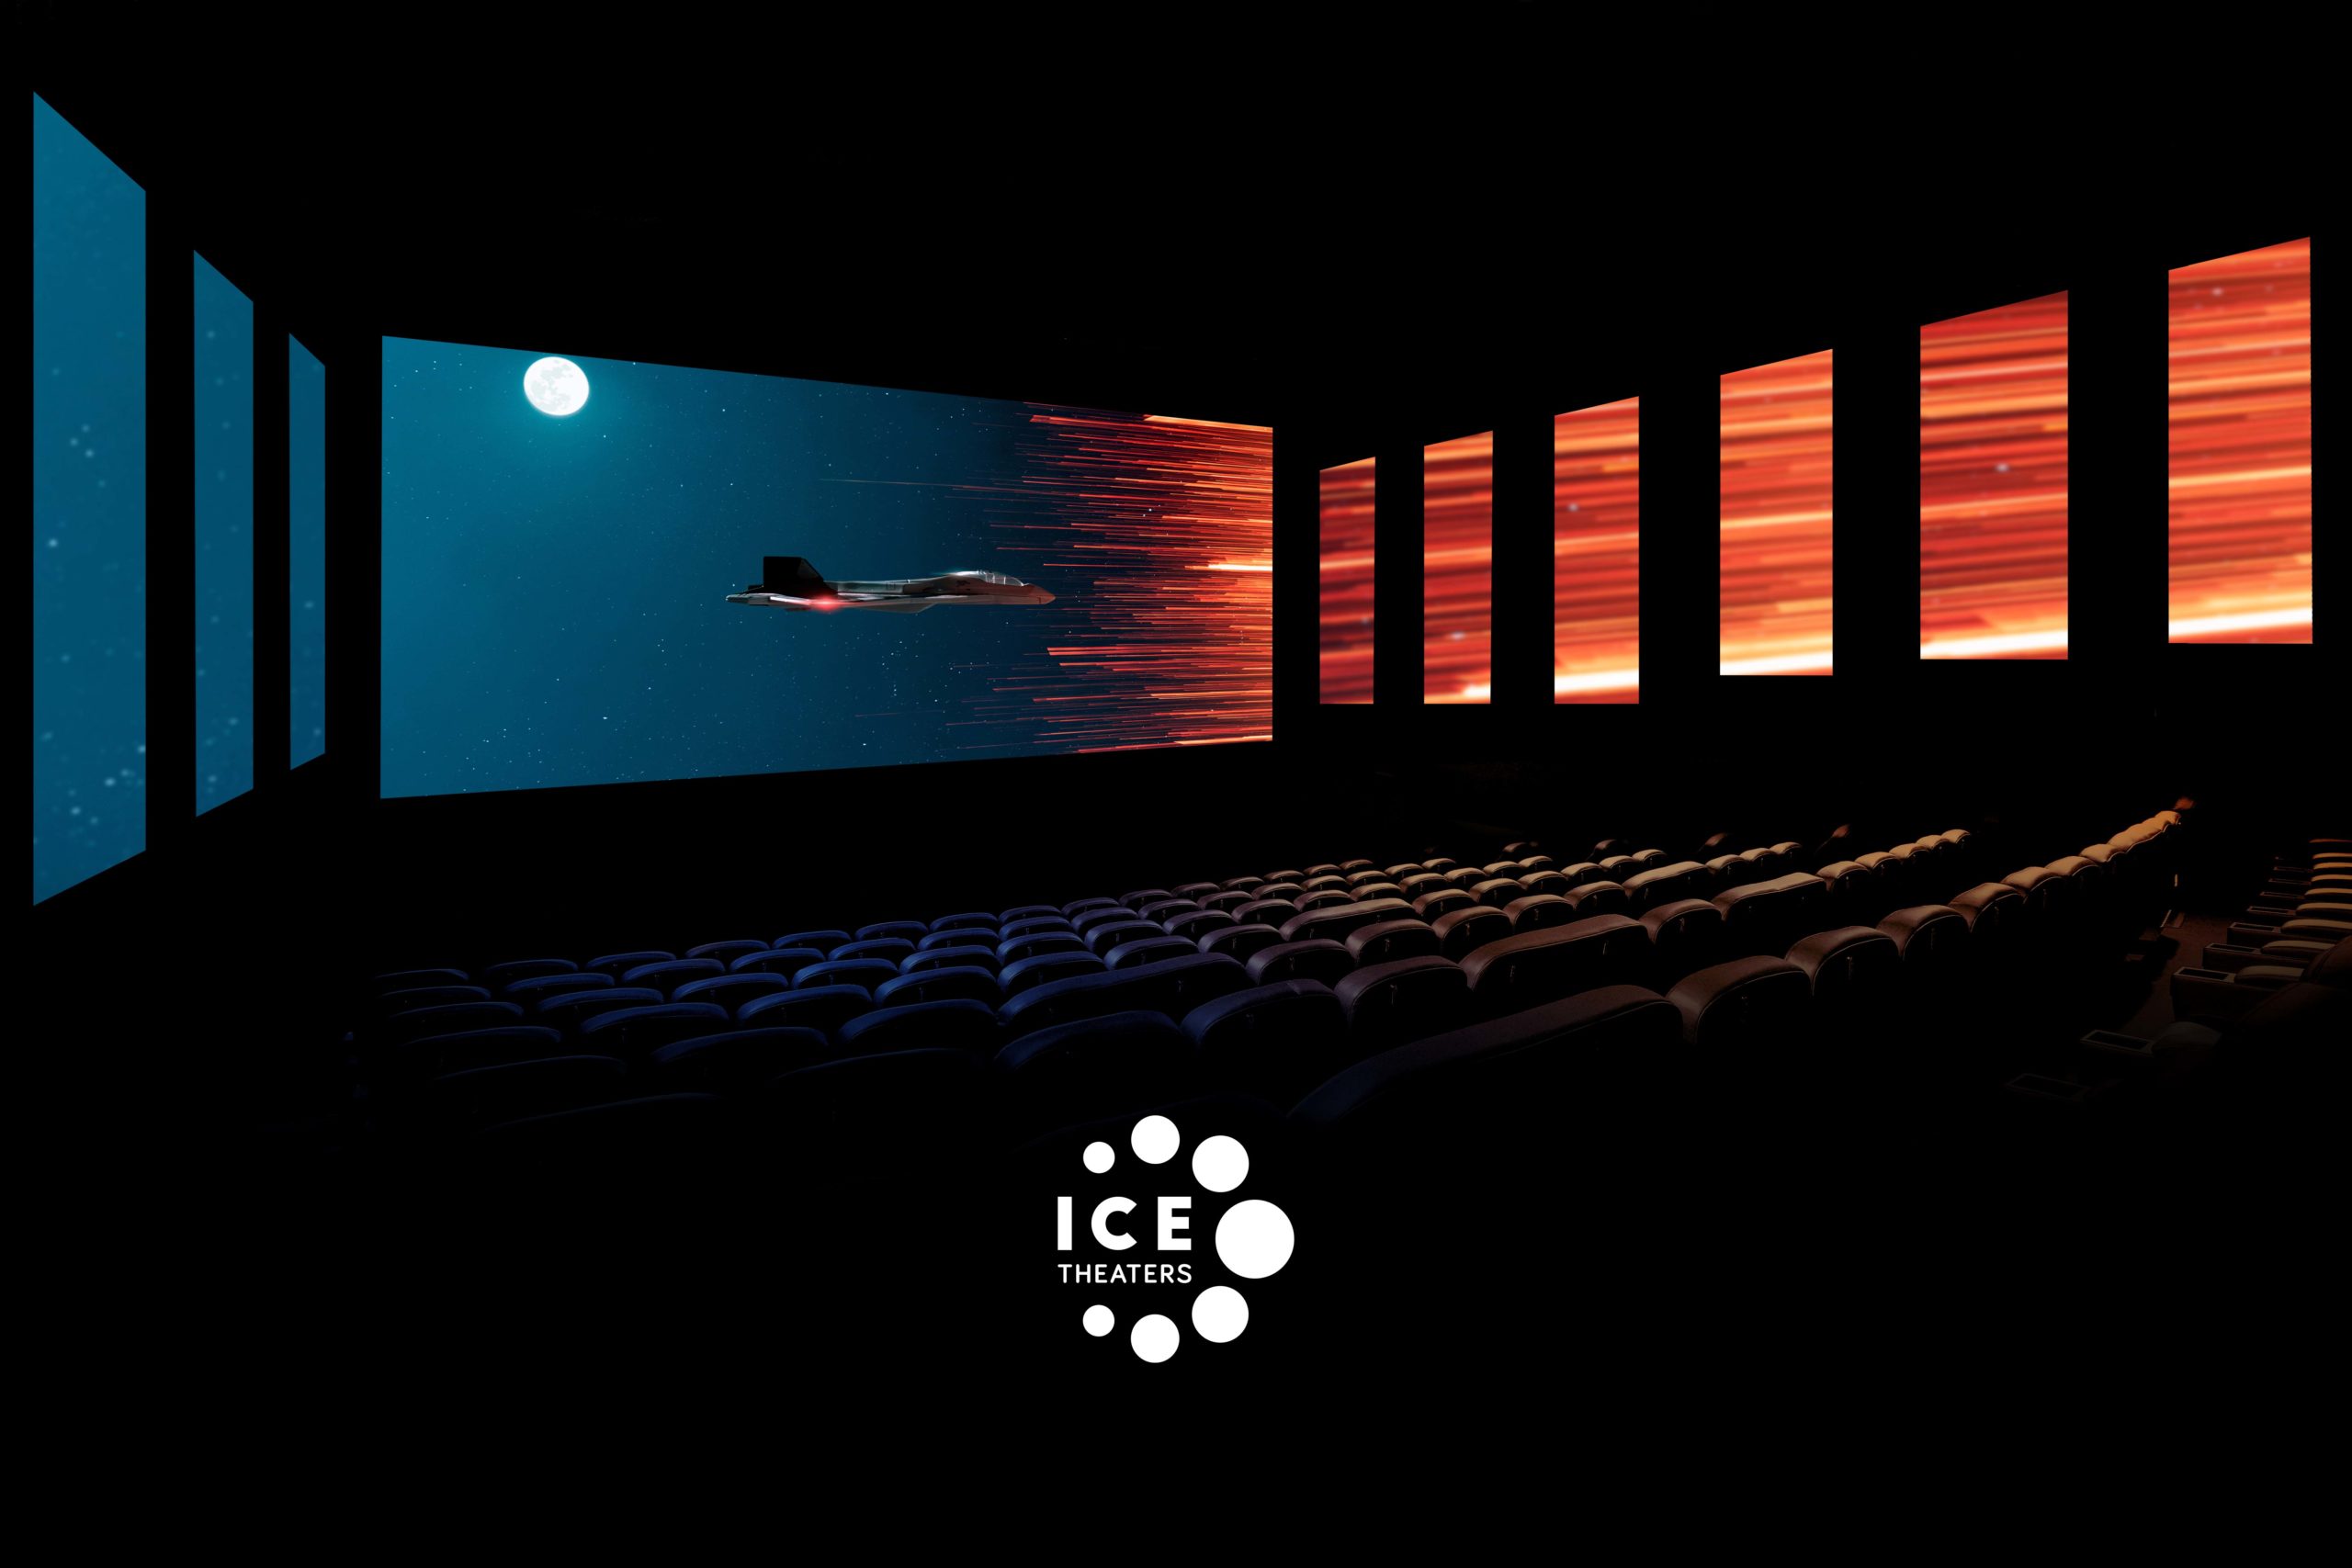 देश की पहली फिल्म है पठान जो ICE फॉर्मेट में रिलीज होगी, यहां जानिए इसका मतलब